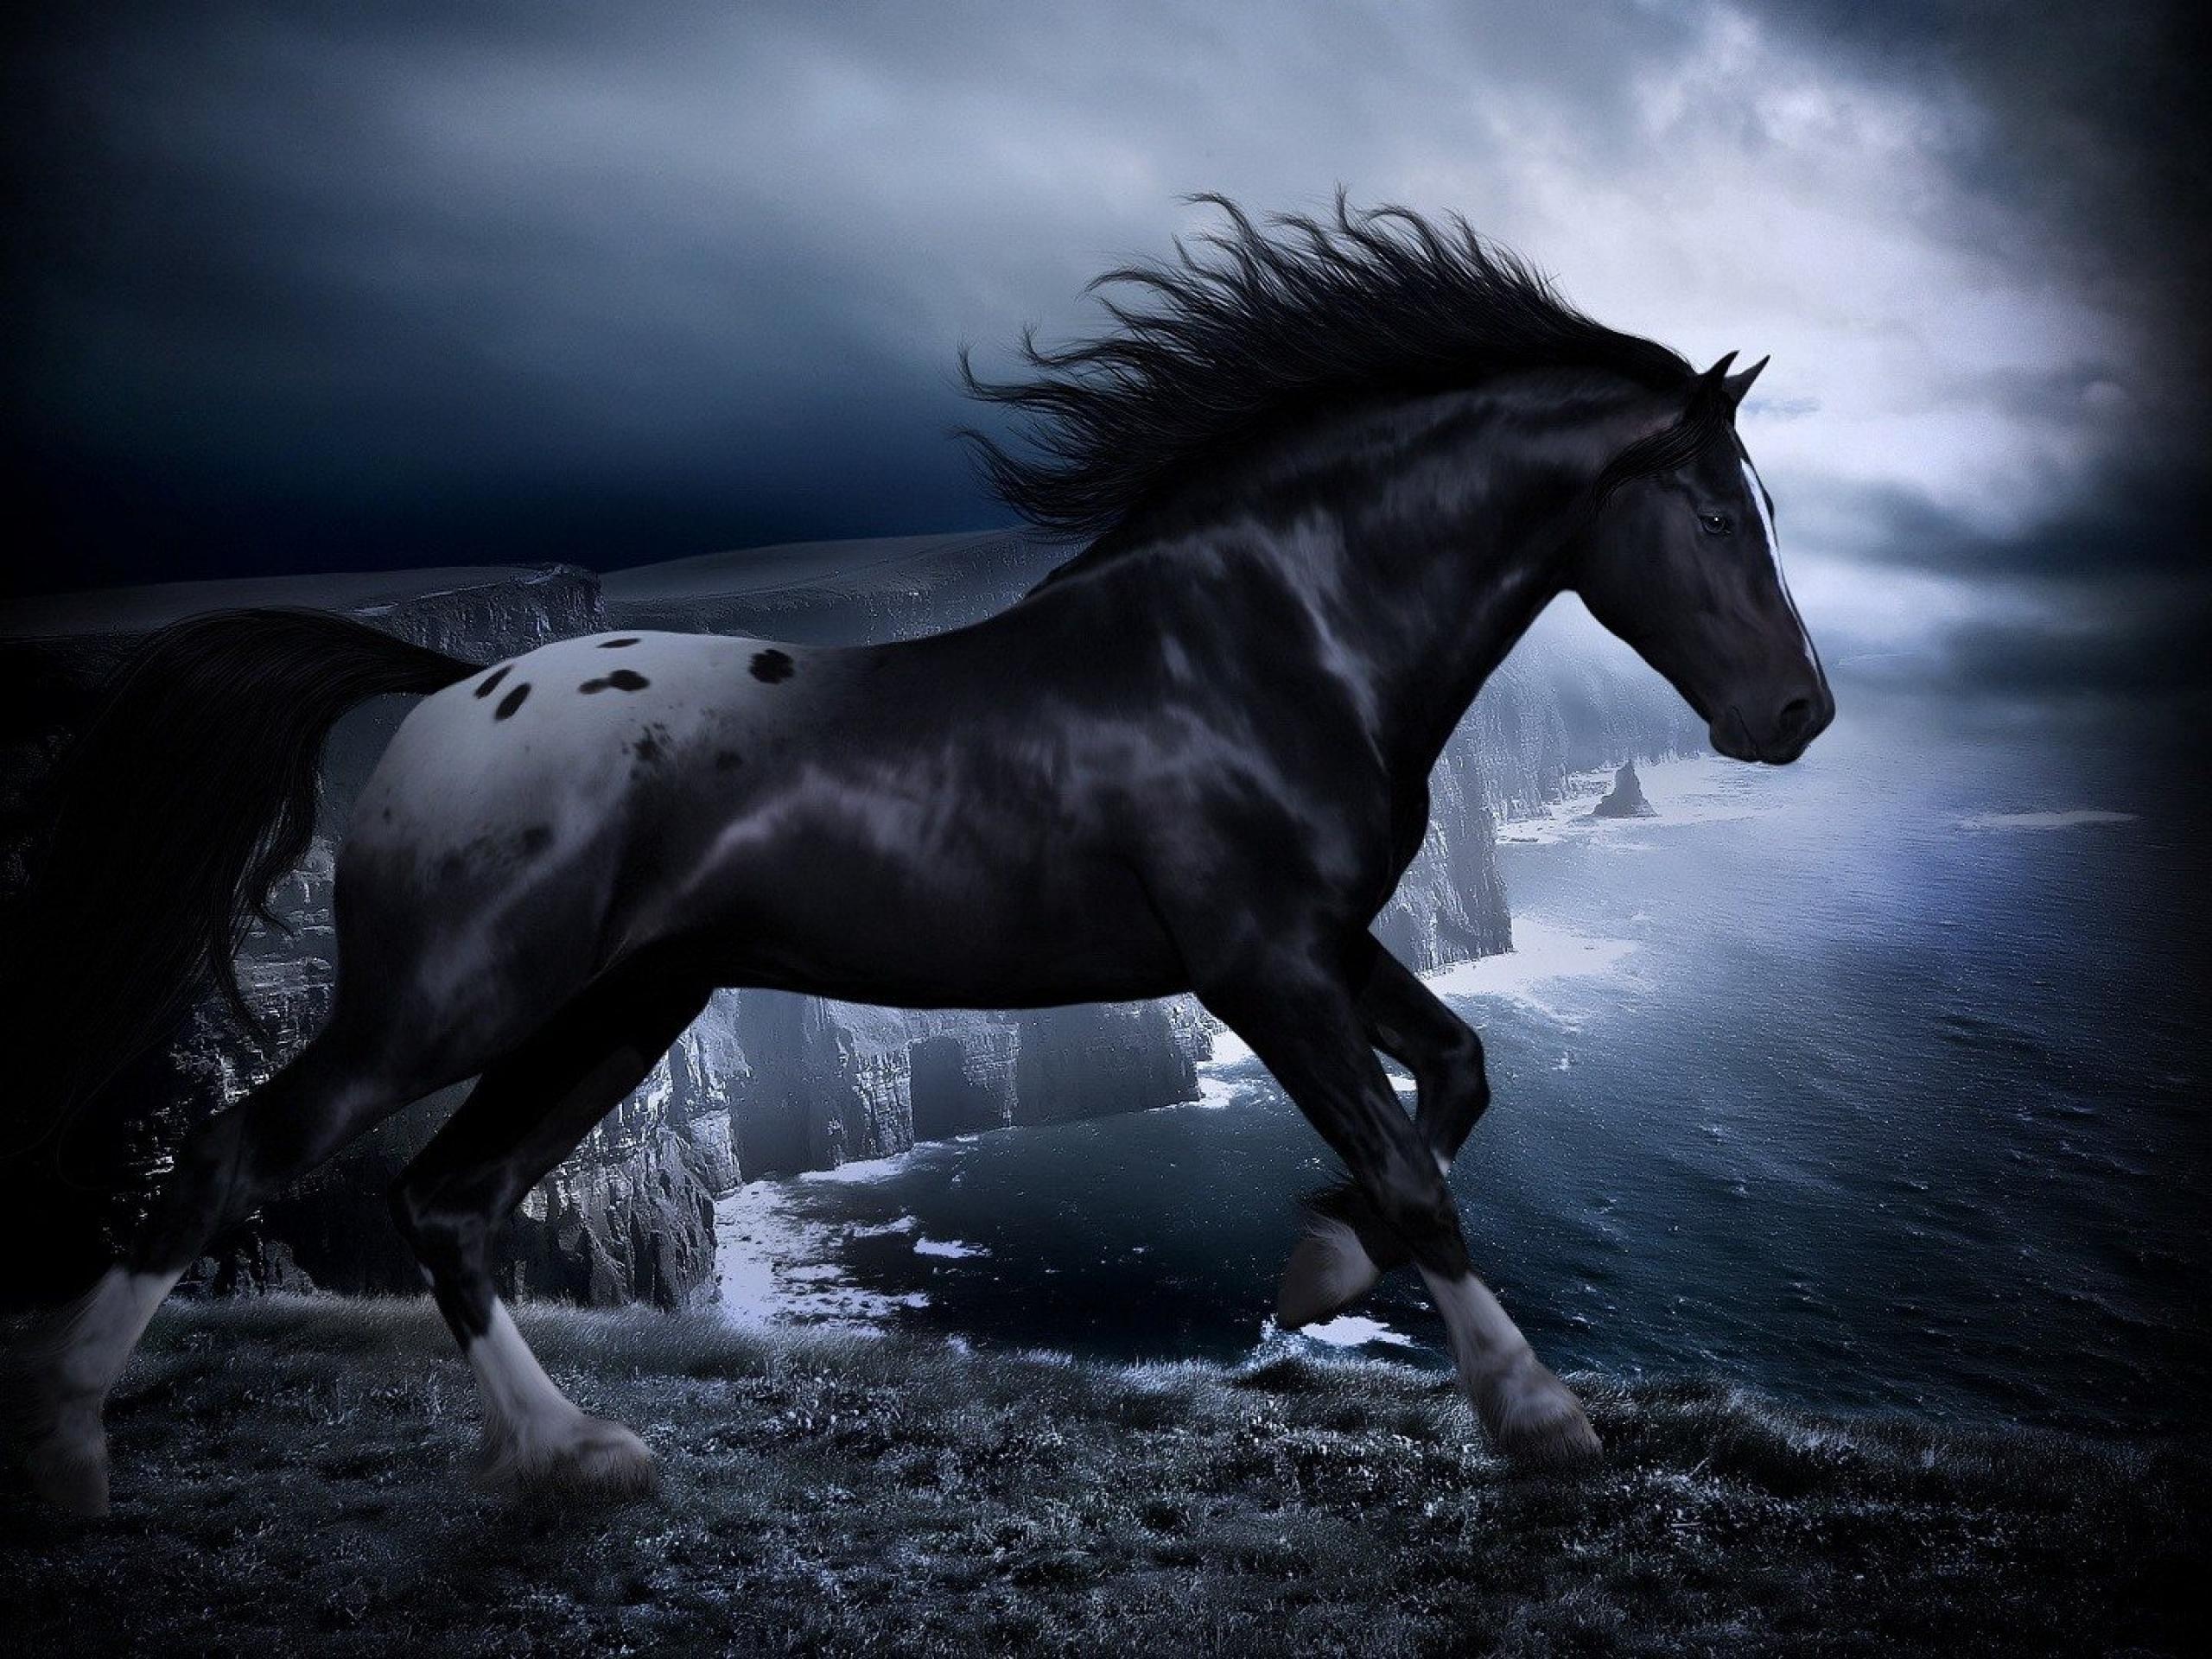 カッコ良くて癒される 馬の高画質な画像 壁紙まとめ 写真まとめサイト Pictas